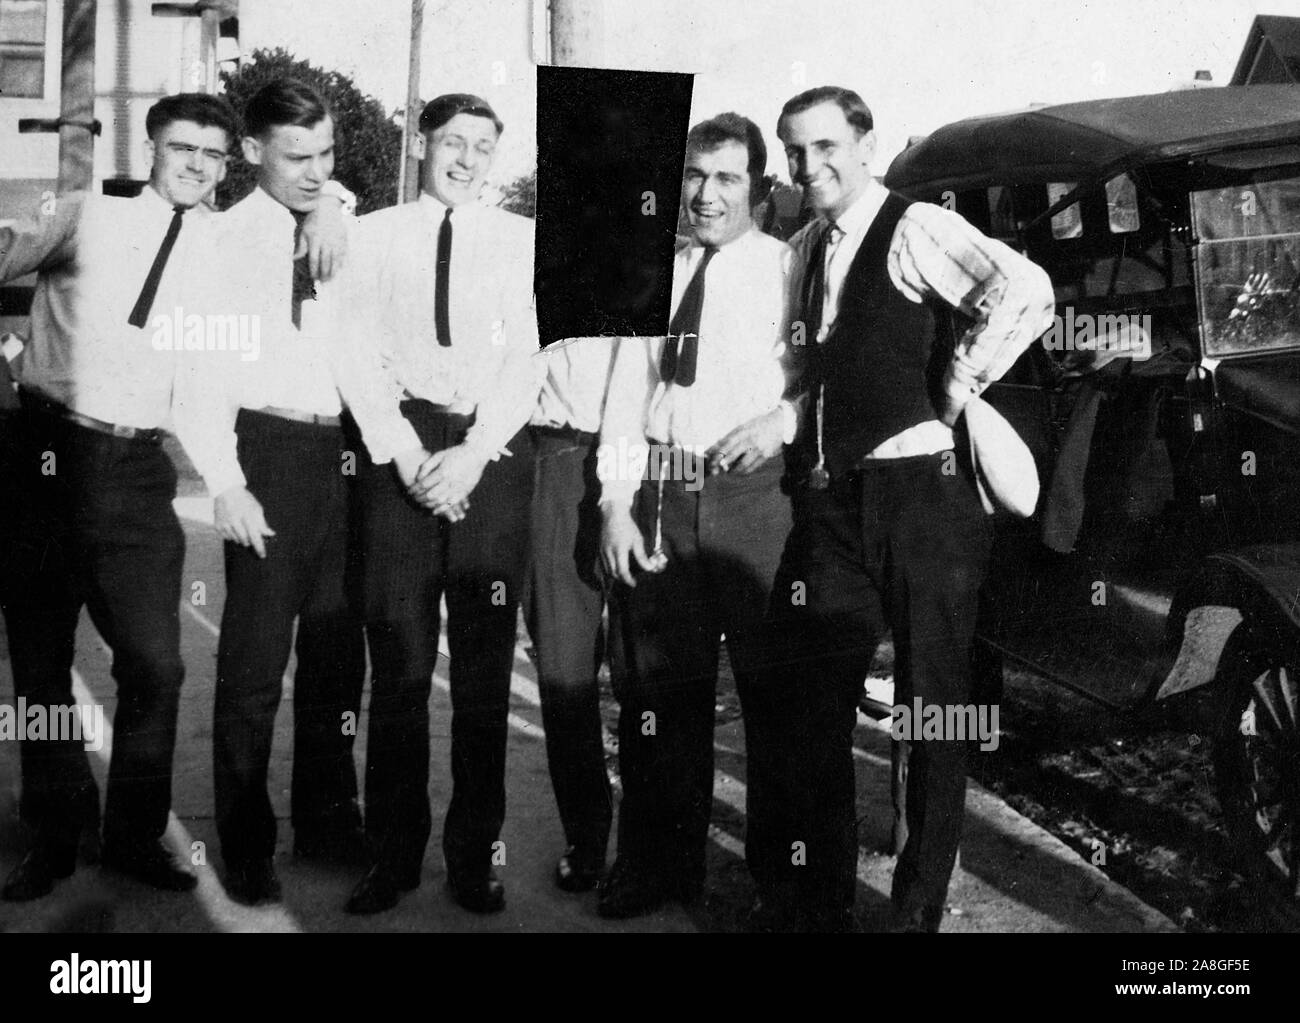 Eine Momentaufnahme zeigt eine Gruppe von Freunden, die durch einen Punkt Auto posiert mit einem von ihnen anschließend aus dem Foto von einer wahrscheinlichen wütend ex - Freundin oder ex-Frau, Ca in Scheiben geschnitten. 1928. Stockfoto